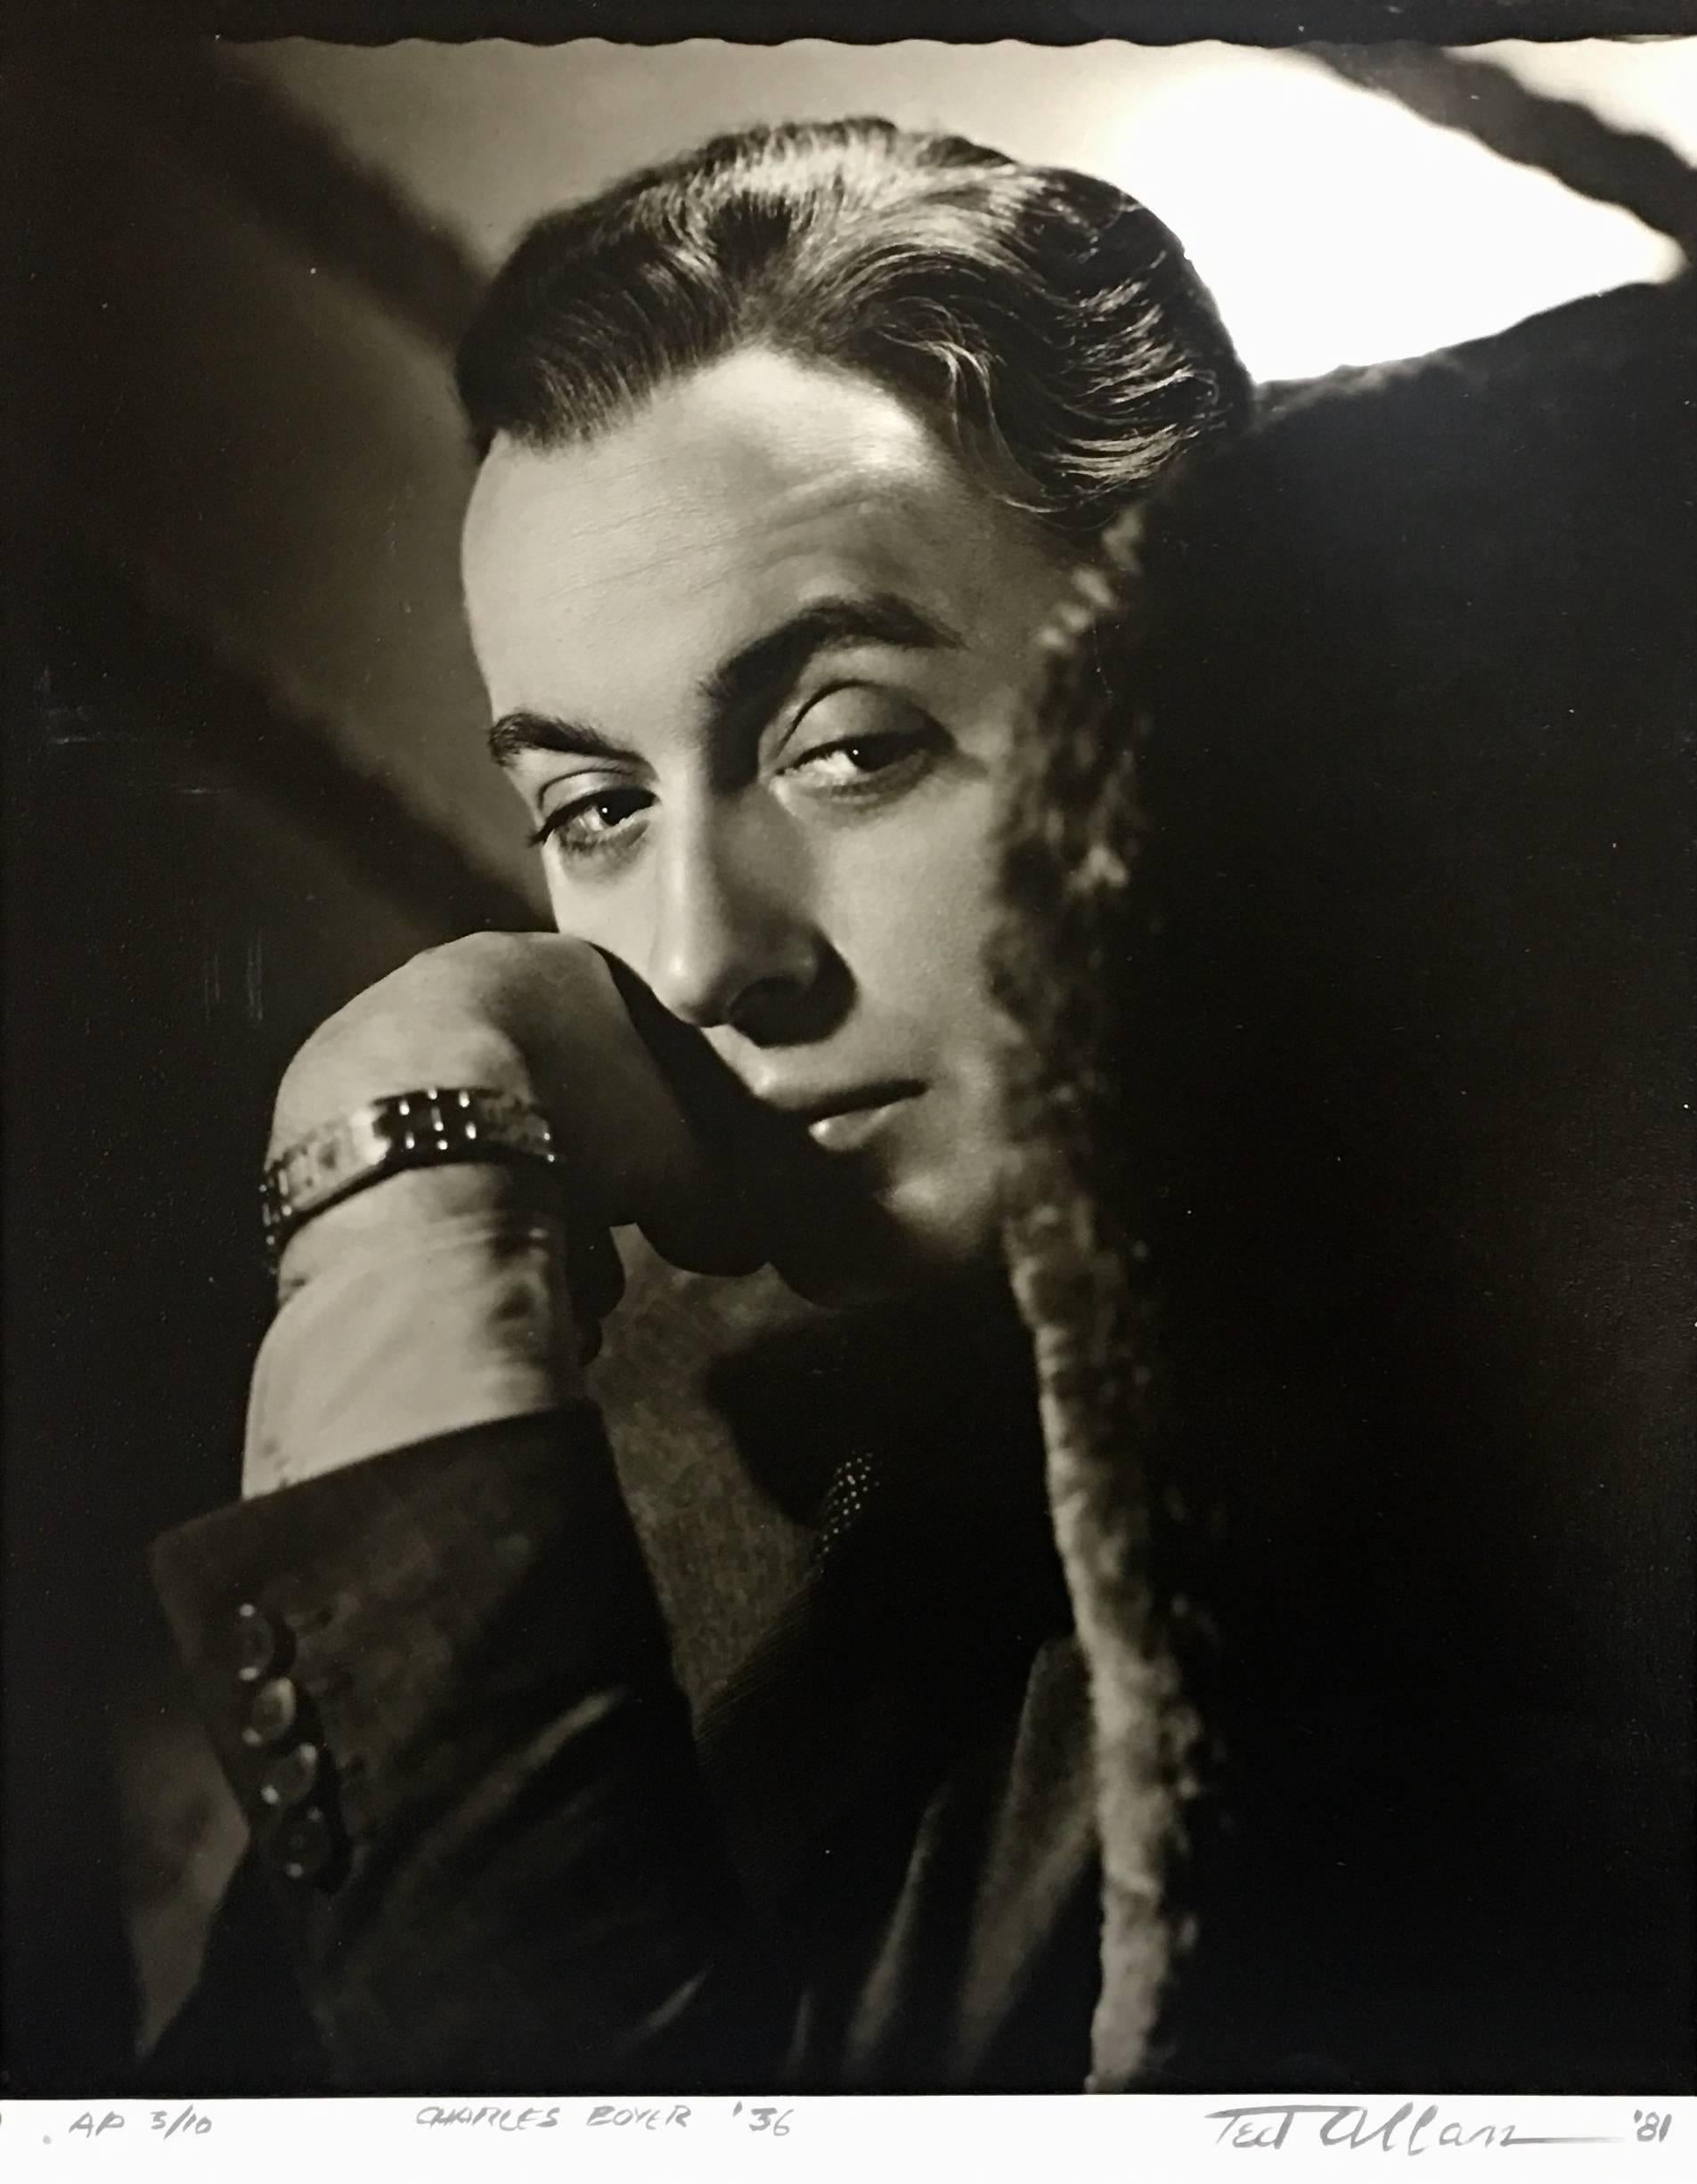 Cette pièce est une photographie originale à partir du négatif original, prise par Ted Allan en 1936.  Elle représente l'acteur français Charles Boyer, qui a joué dans plus de 80 films entre 1920 et 1976. Cette photographie est signée à la main par